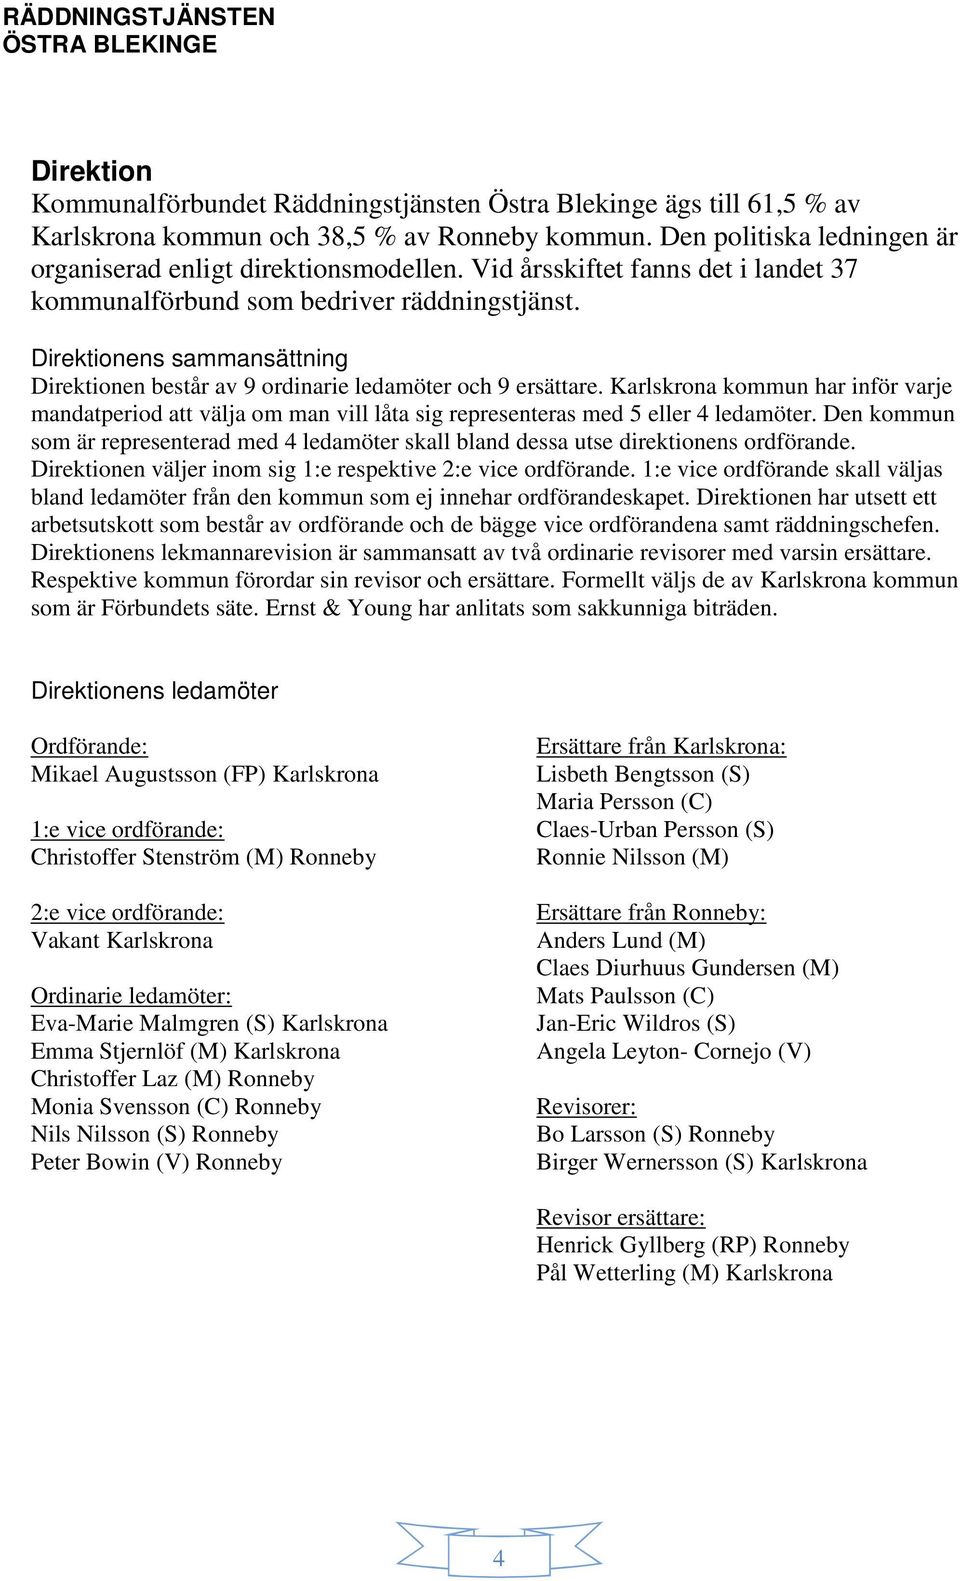 Karlskrona kommun har inför varje mandatperiod att välja om man vill låta sig representeras med 5 eller 4 ledamöter.